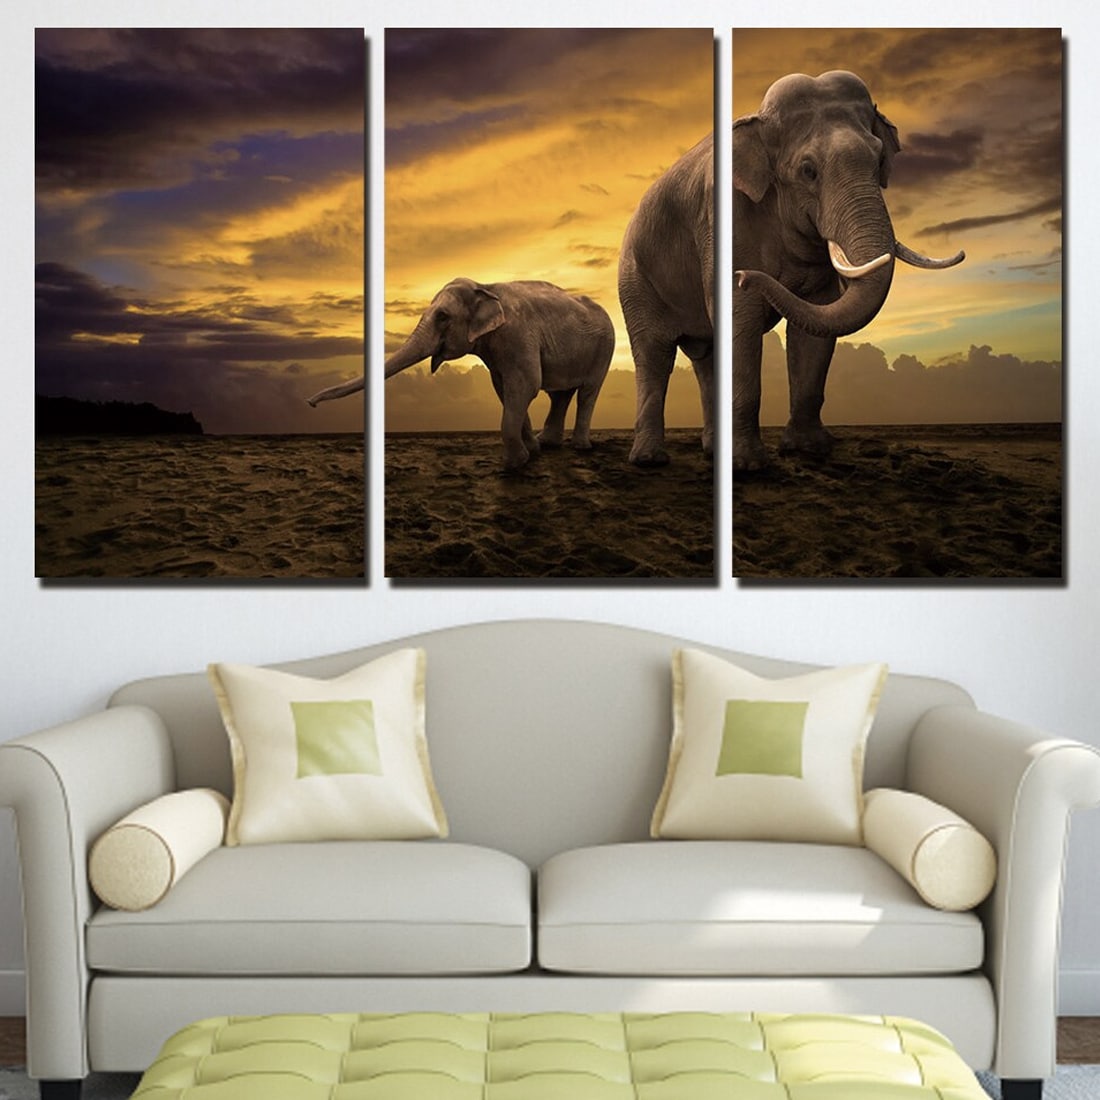 Målning av en elefant och en elefantunge i solnedgången